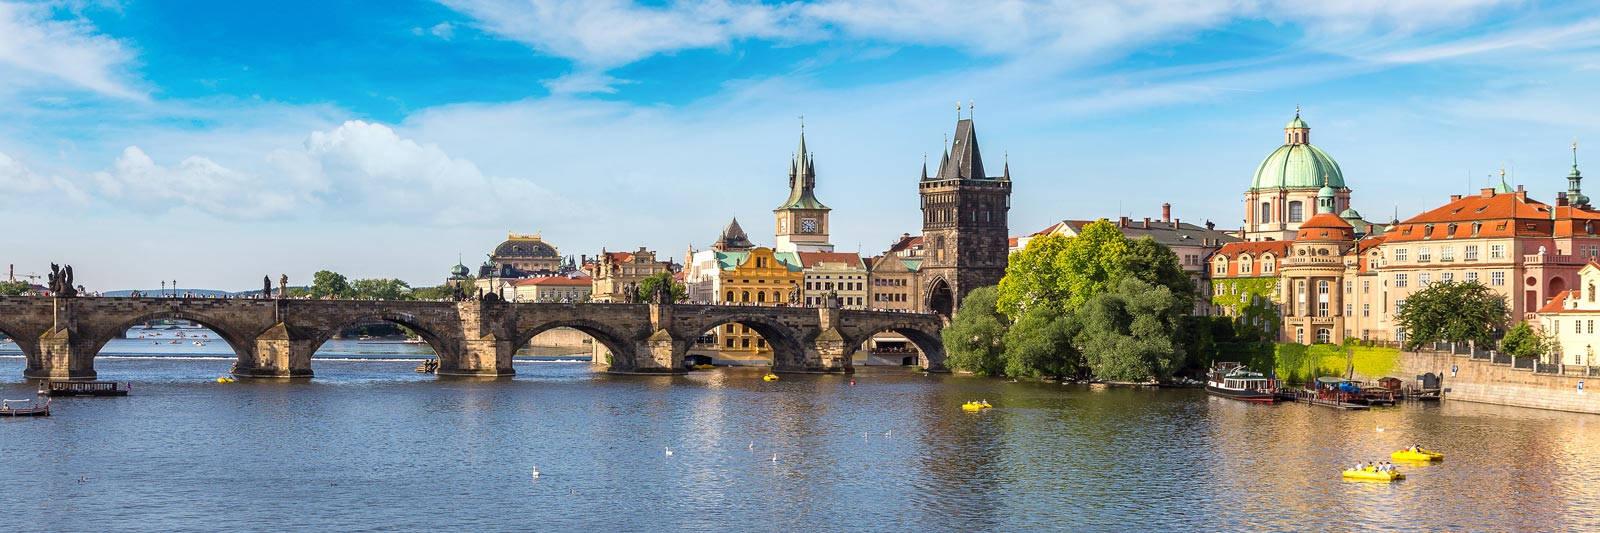 Poolurlaub in Tschechien - 1.699 Ferienwohnungen und Ferienhäuser mit Pool - tourist-online.de